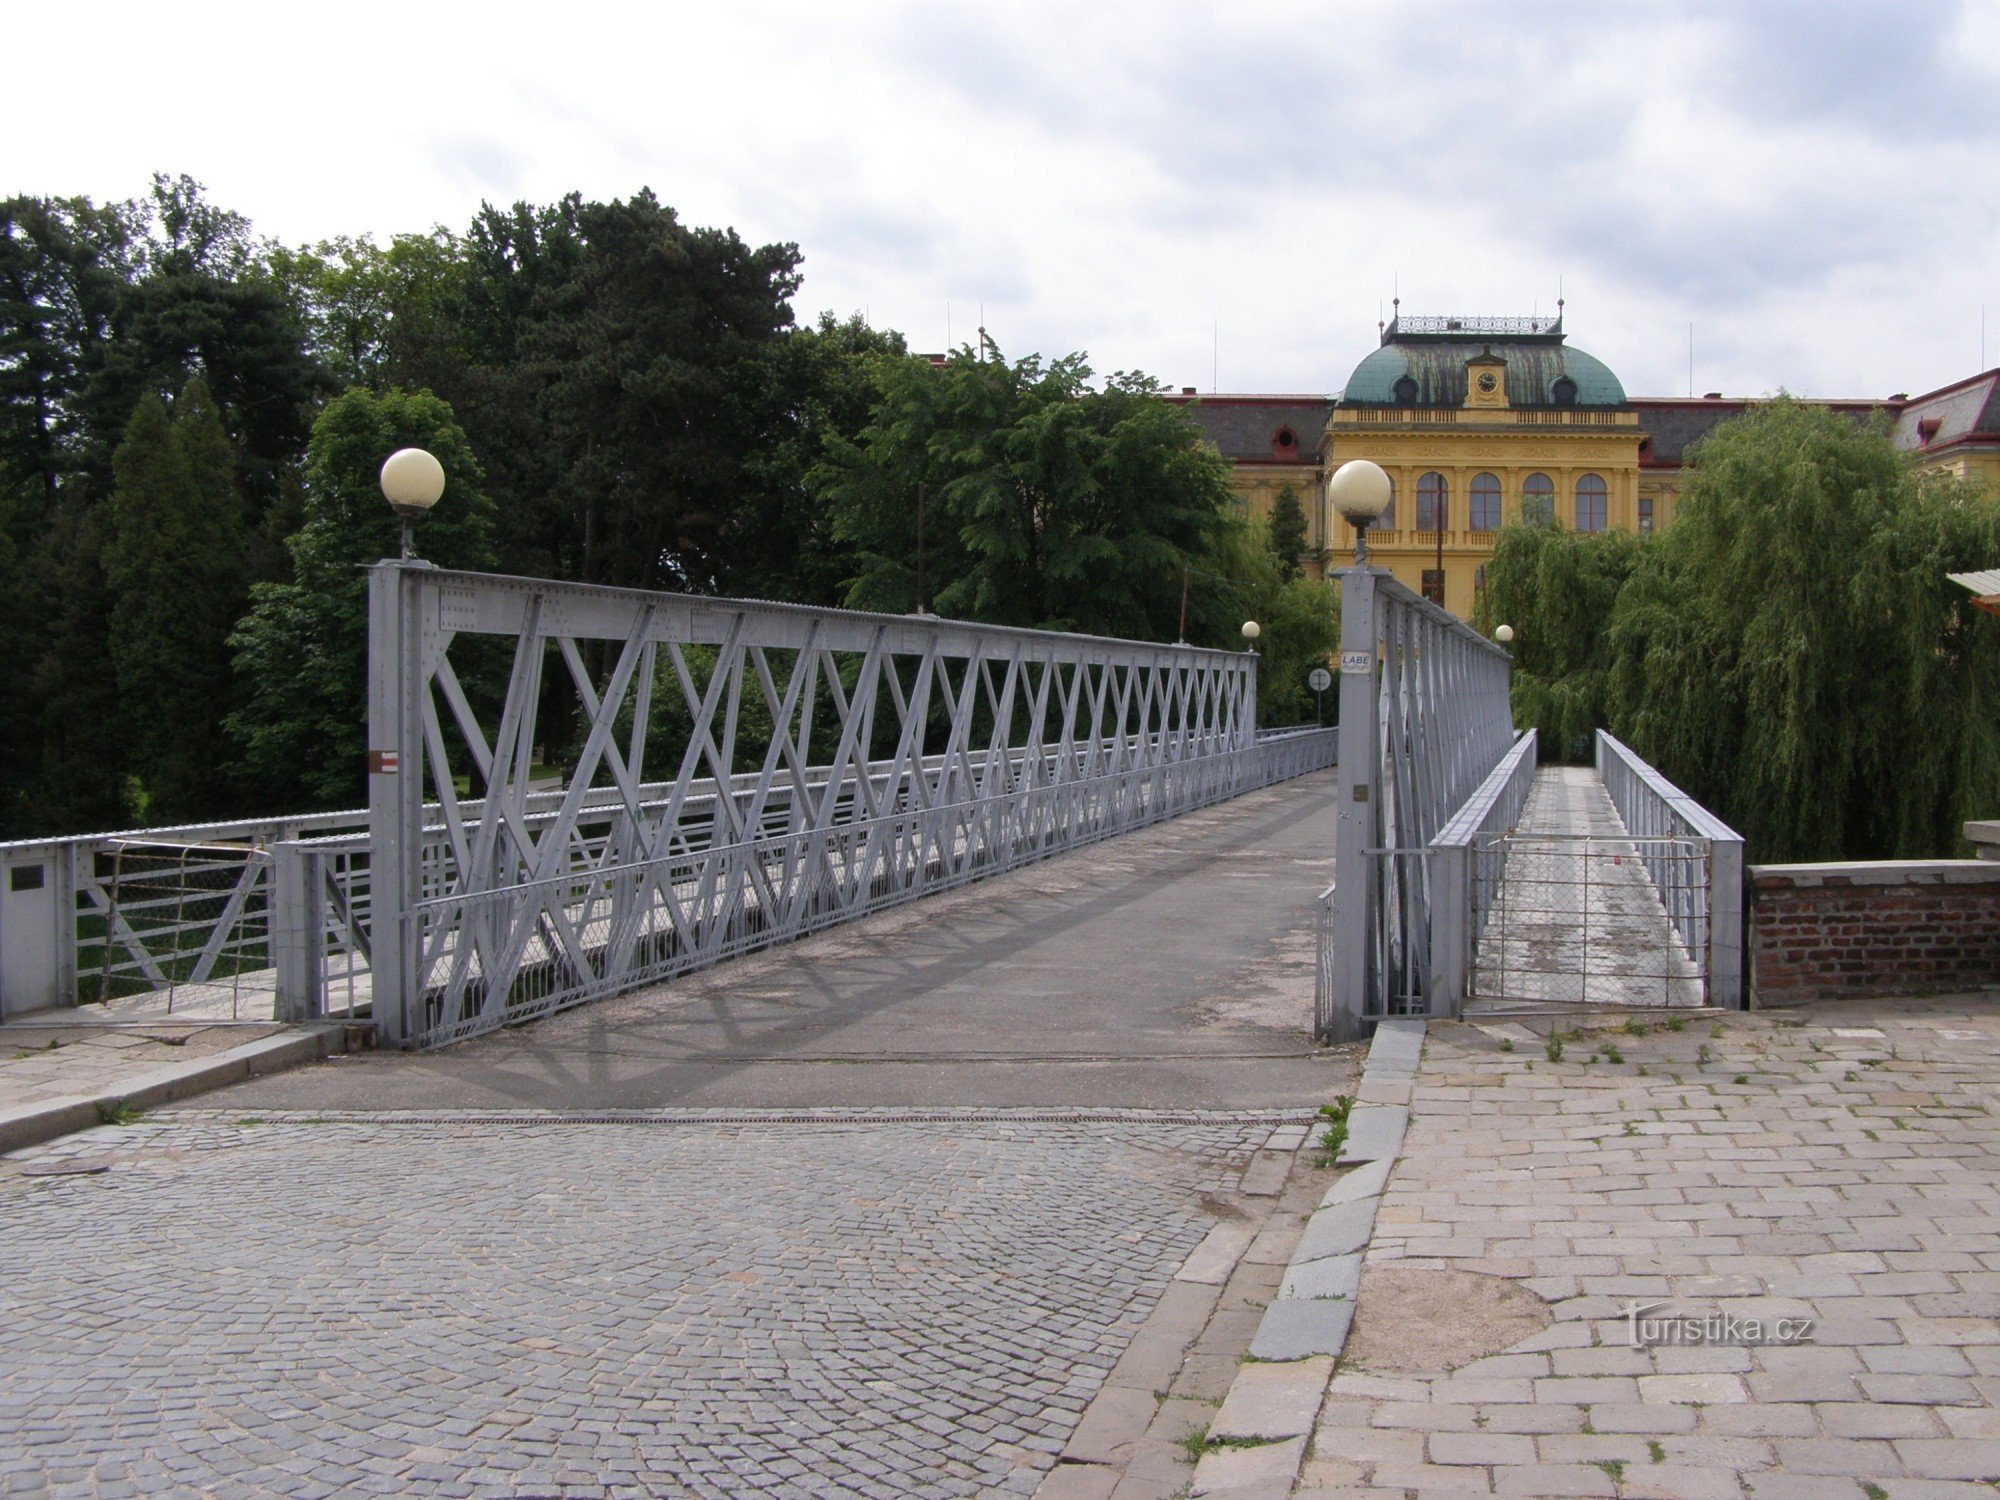 Jaroměř - żelazny most przez Łabę